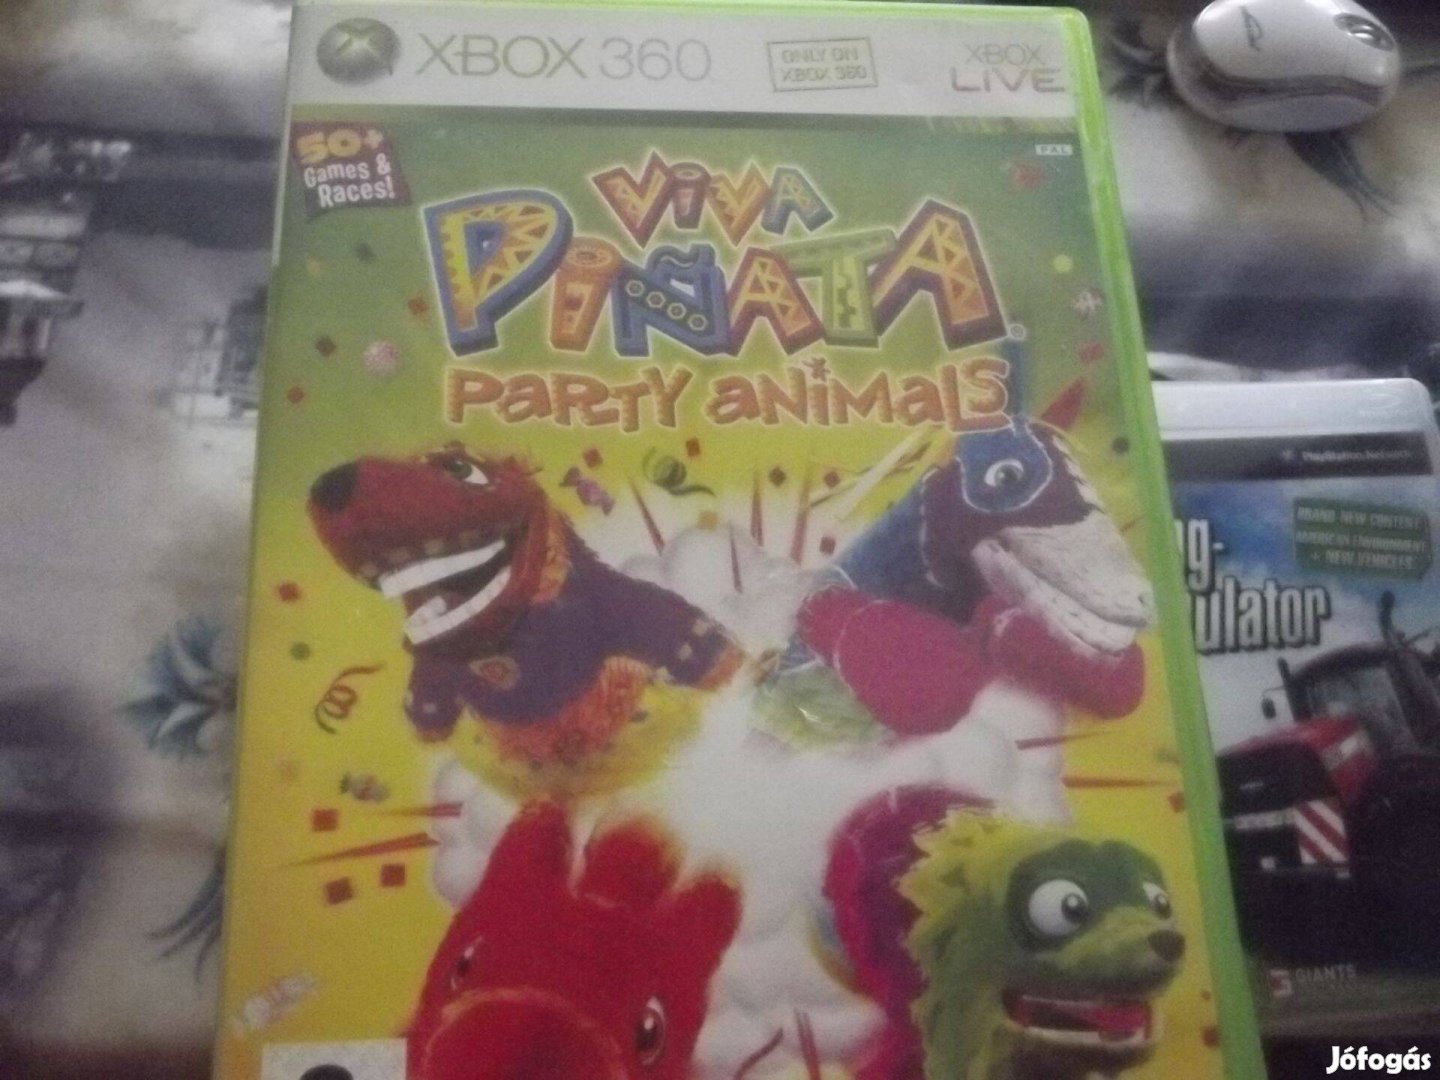 X-152 Xbox 360 Eredeti Játék : Viva Pinata Party Animals ( karcment